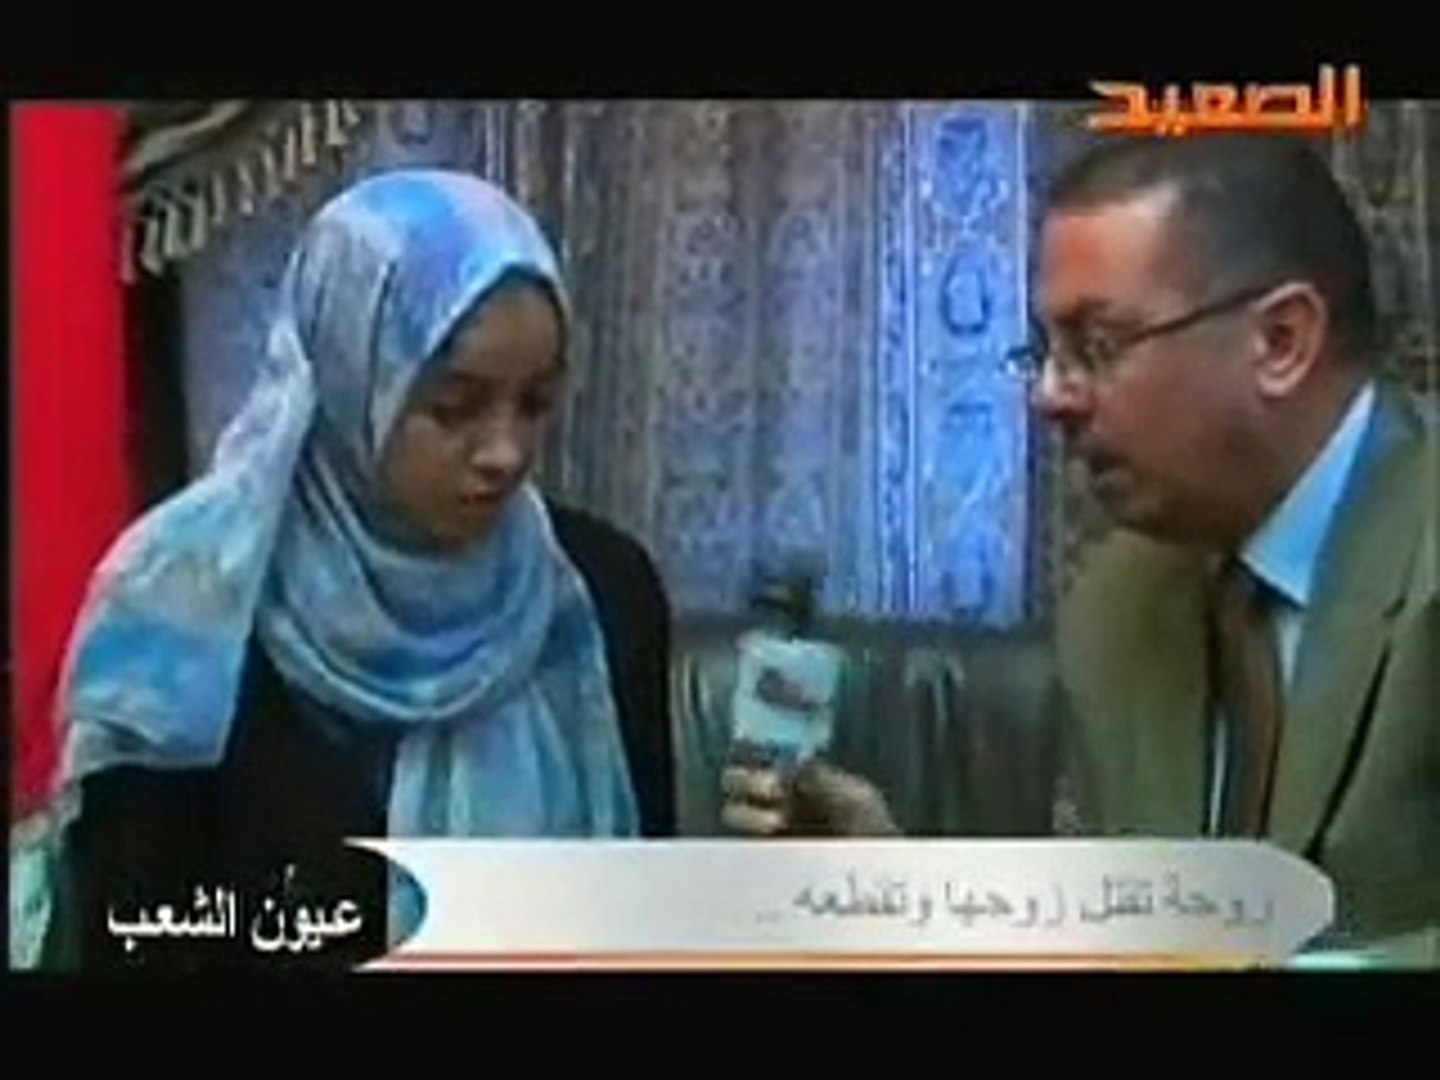 عيون الشعب - قتل الزوجه لزوجها في الفيوم - video Dailymotion